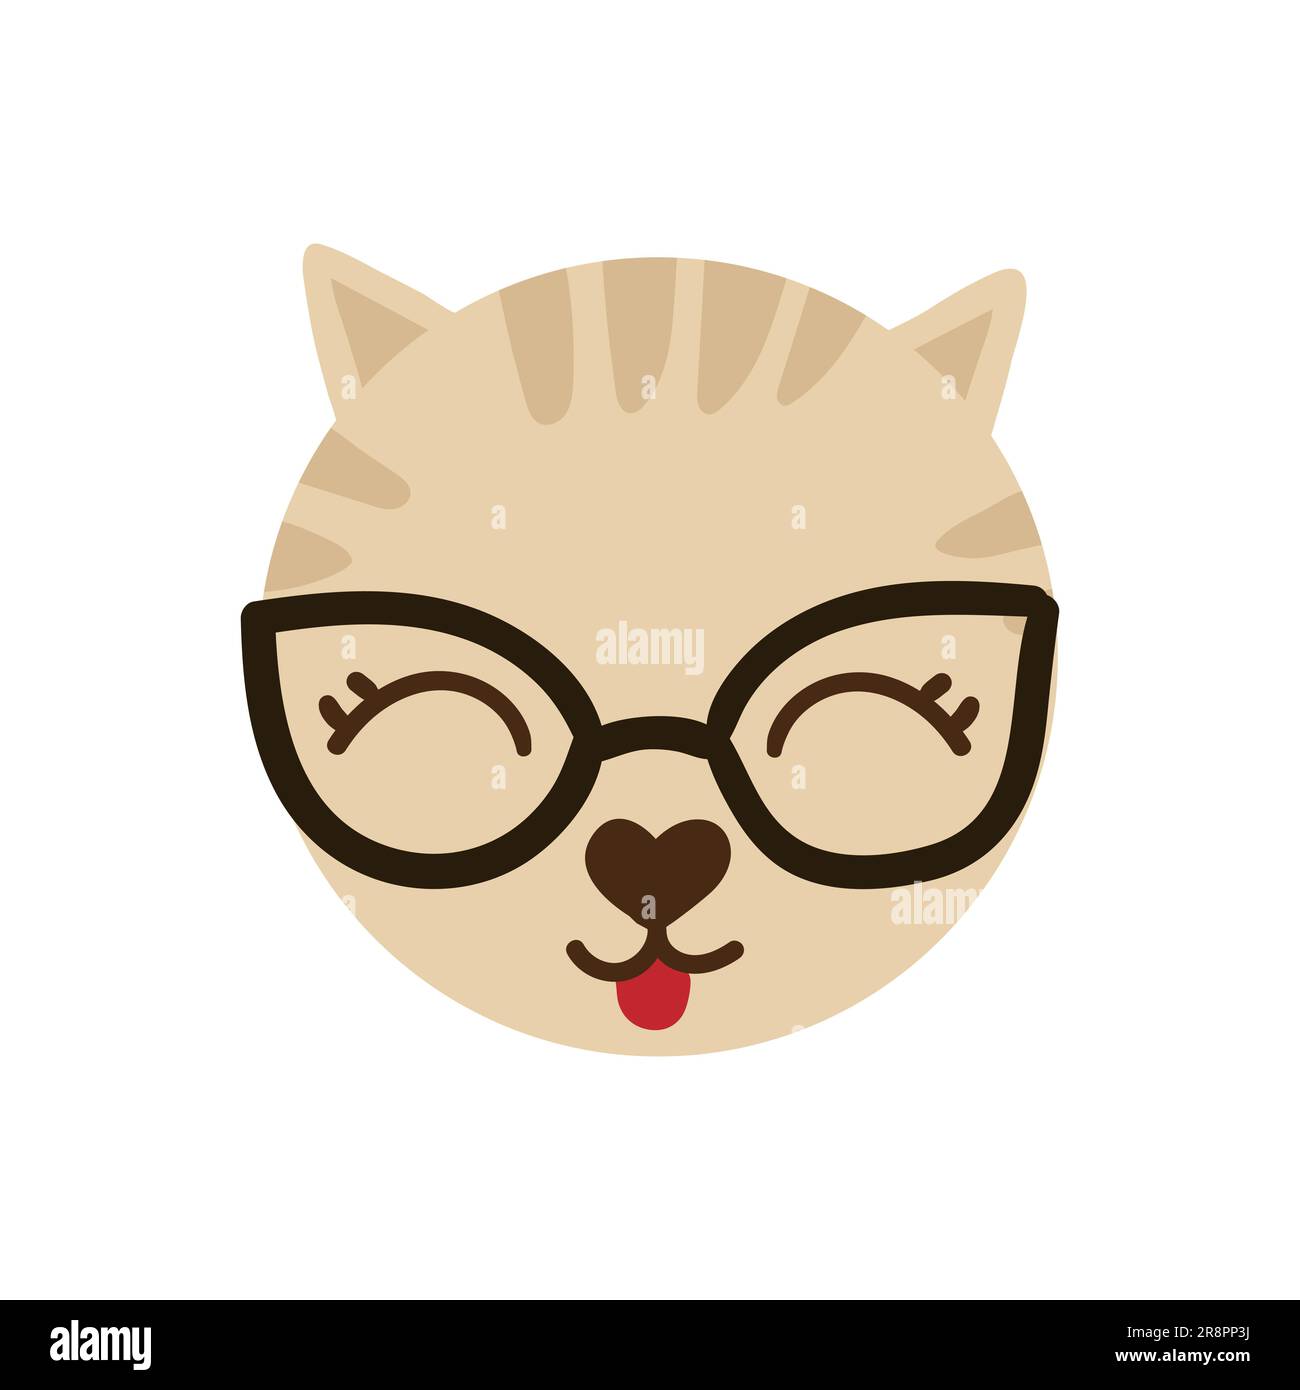 Tete drole emoji chat Banque d'images détourées - Page 2 - Alamy